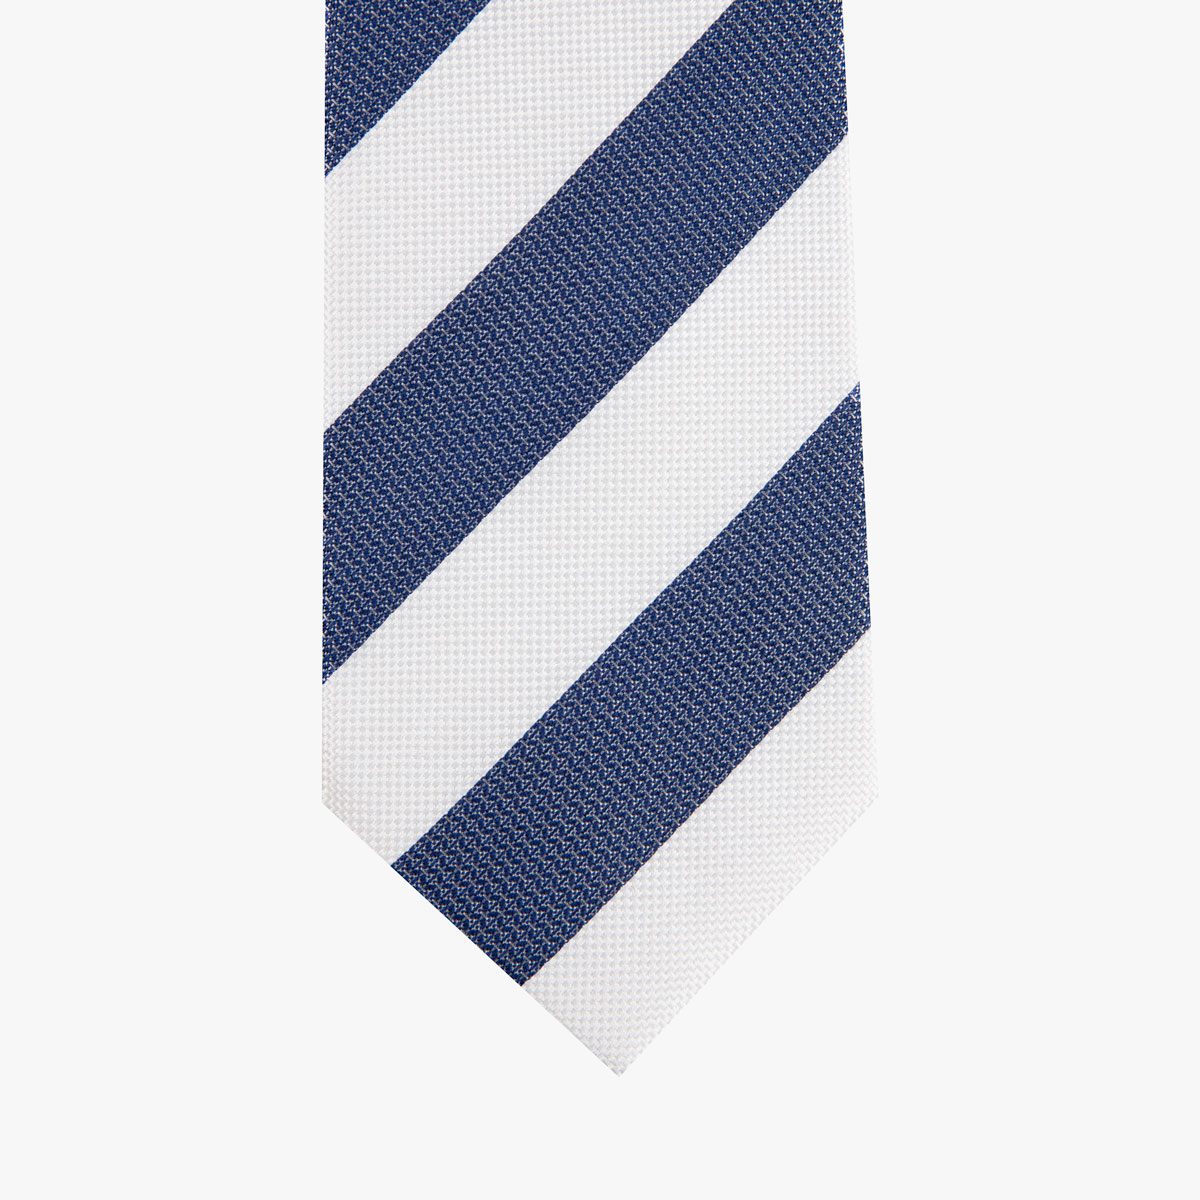 Krawatte glatt mit breiten Streifen in off-white und blau